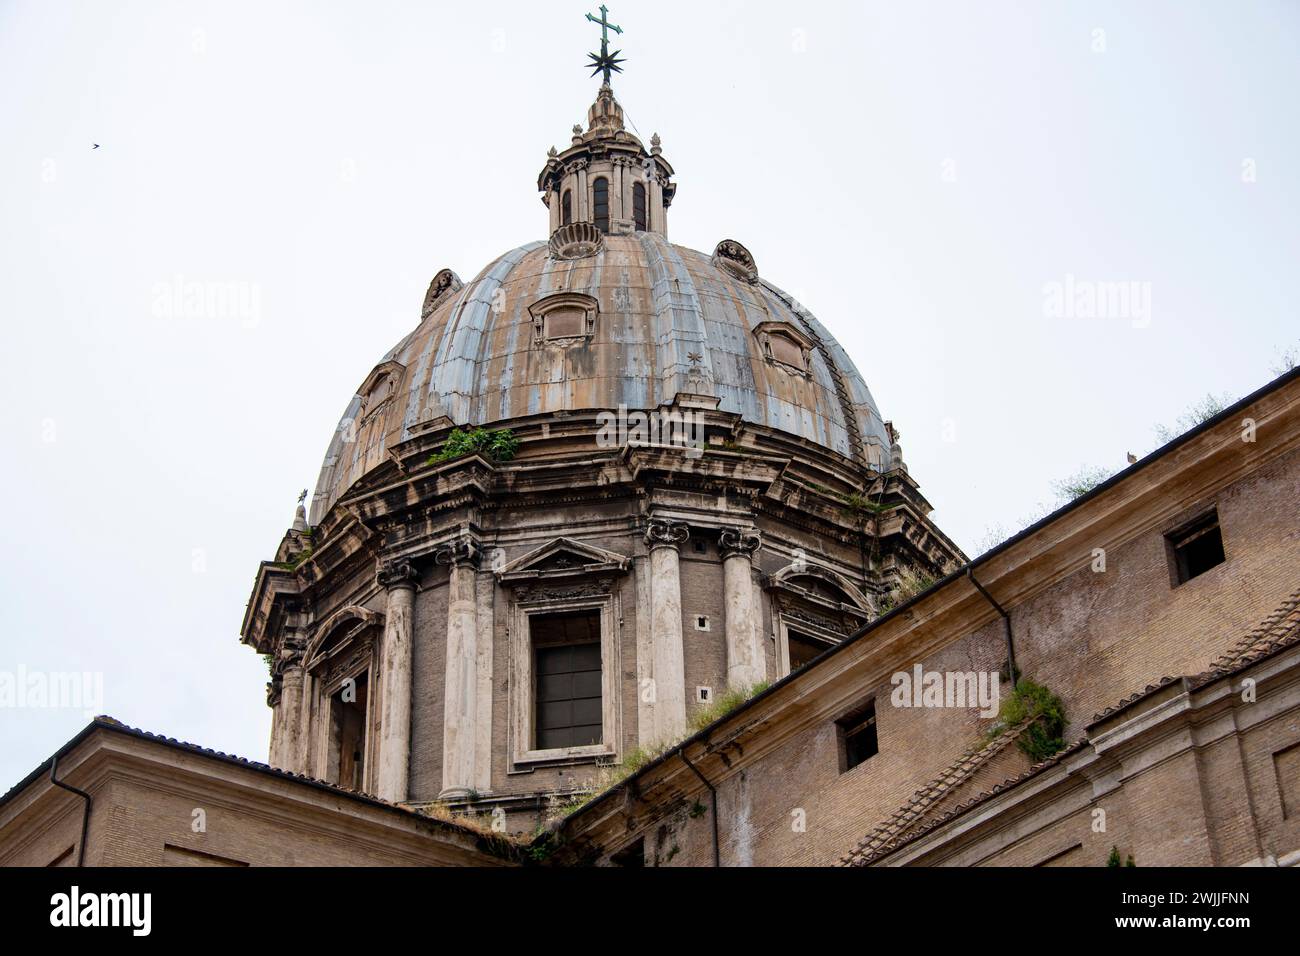 Basilica of Sant'Andrea della Valle - Rome - Italy Stock Photo